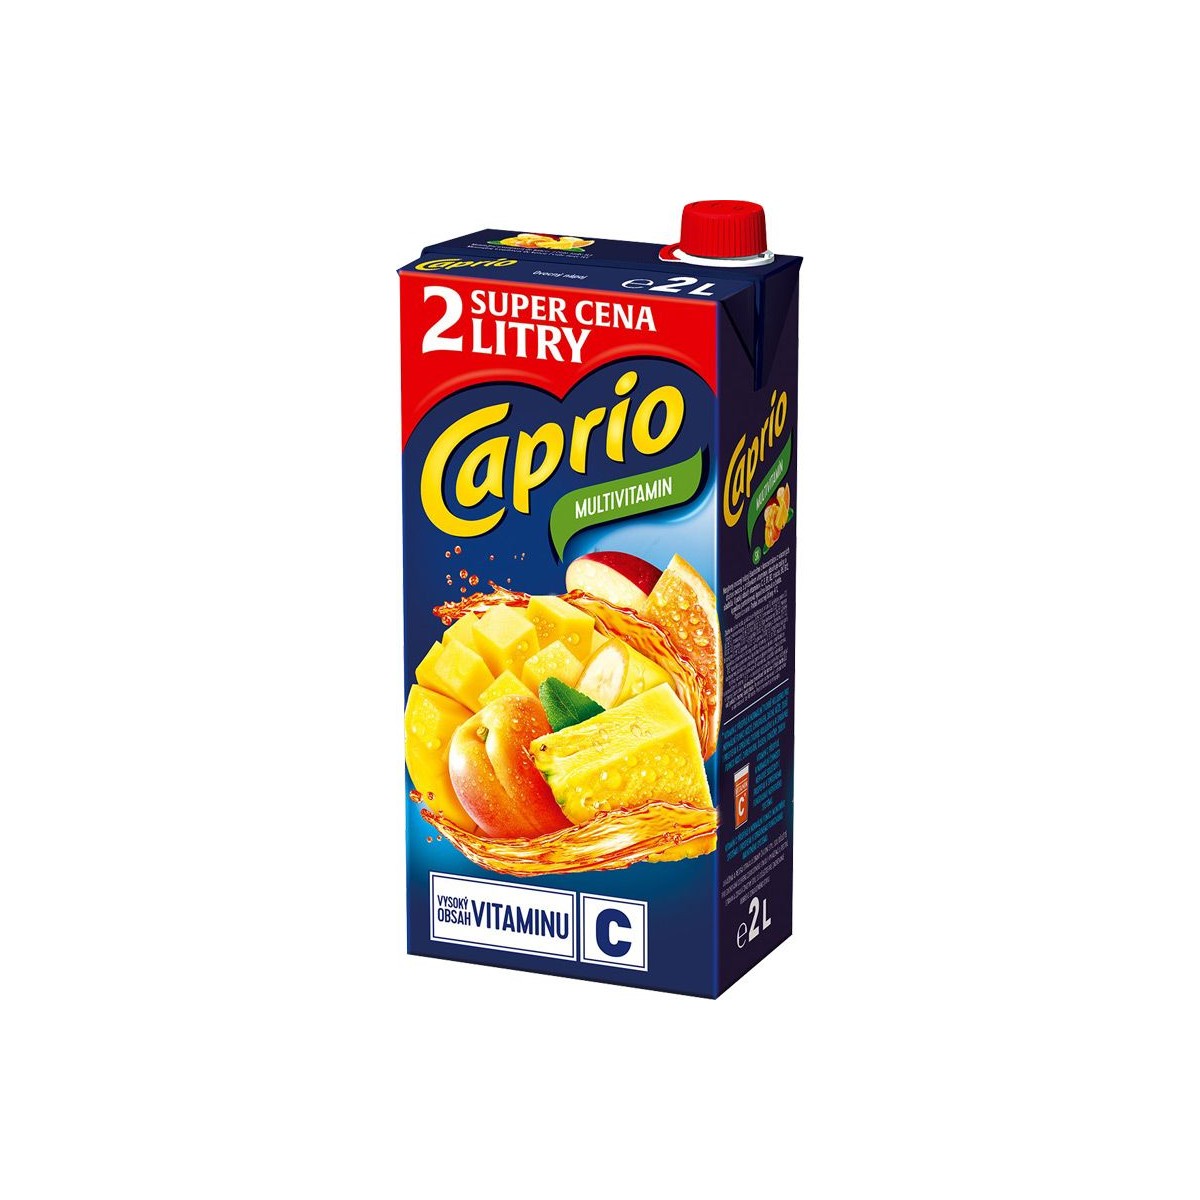 Caprio multivitamin 2l